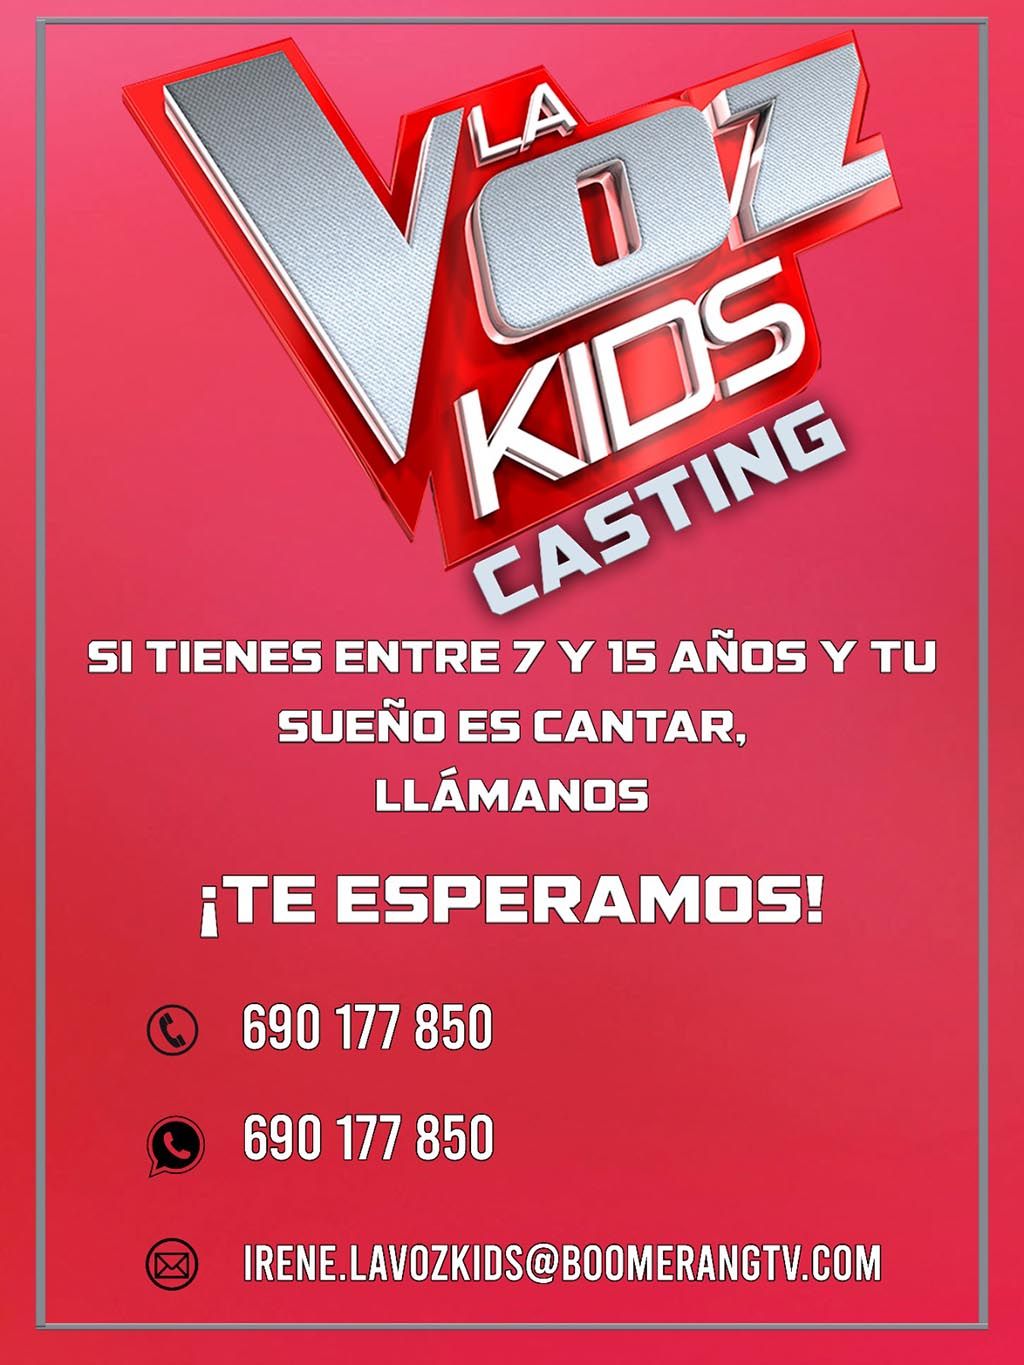 Dónde y cuándo se realizarán los casting para la nueva temporada de La Voz argentina